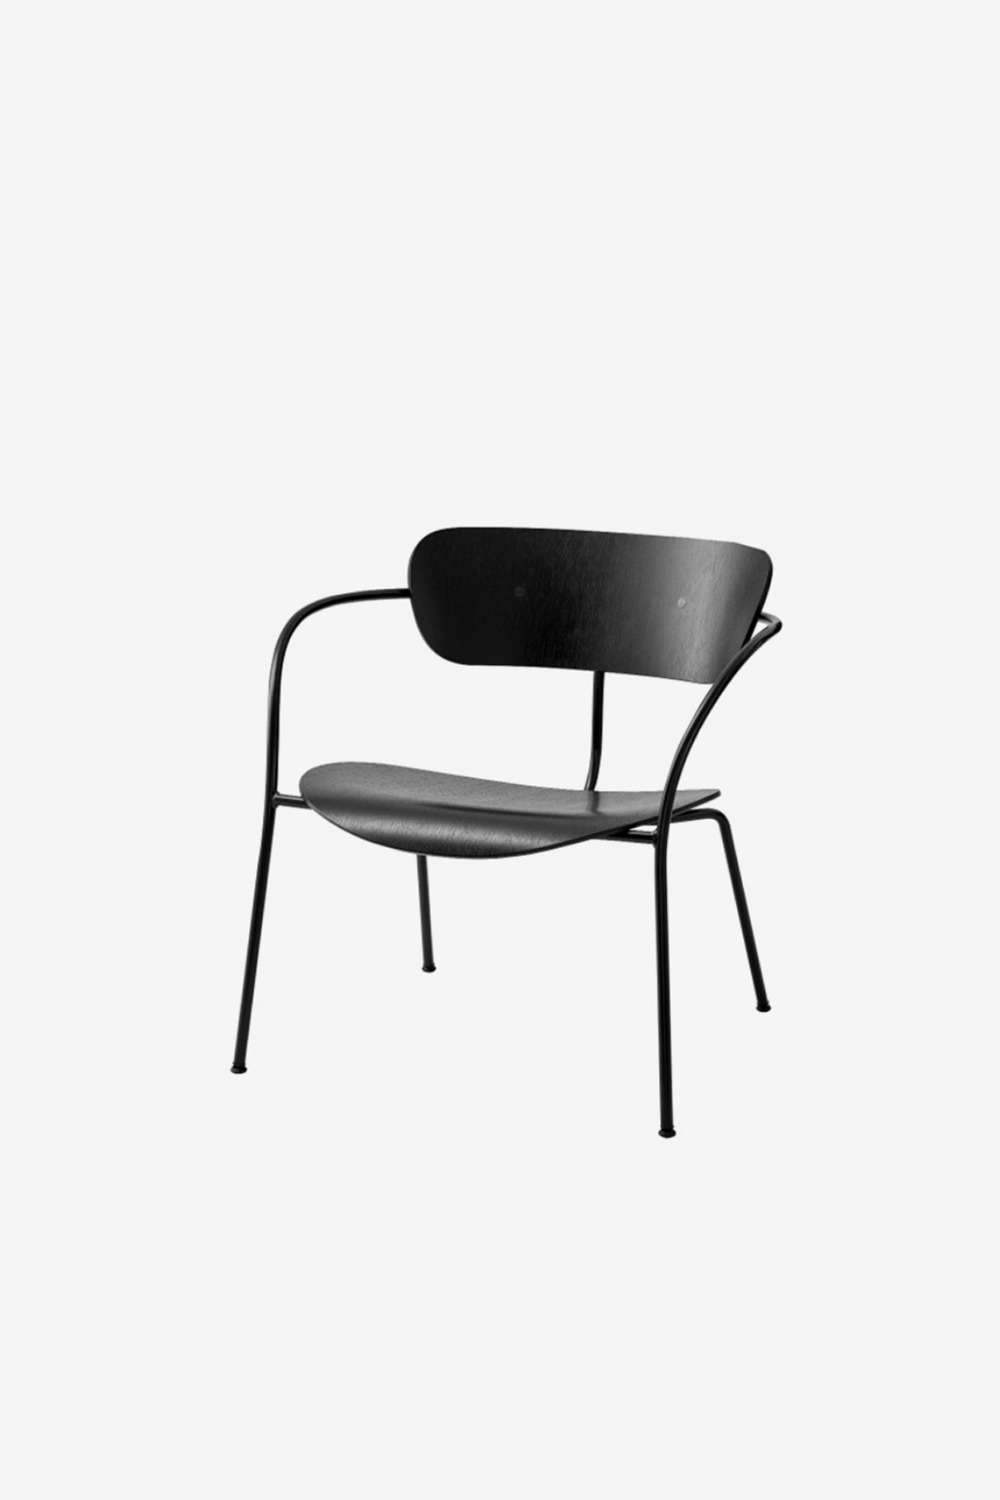 [&amp;Tradition] Pavilion lounge chair / AV5 (Black / Black)